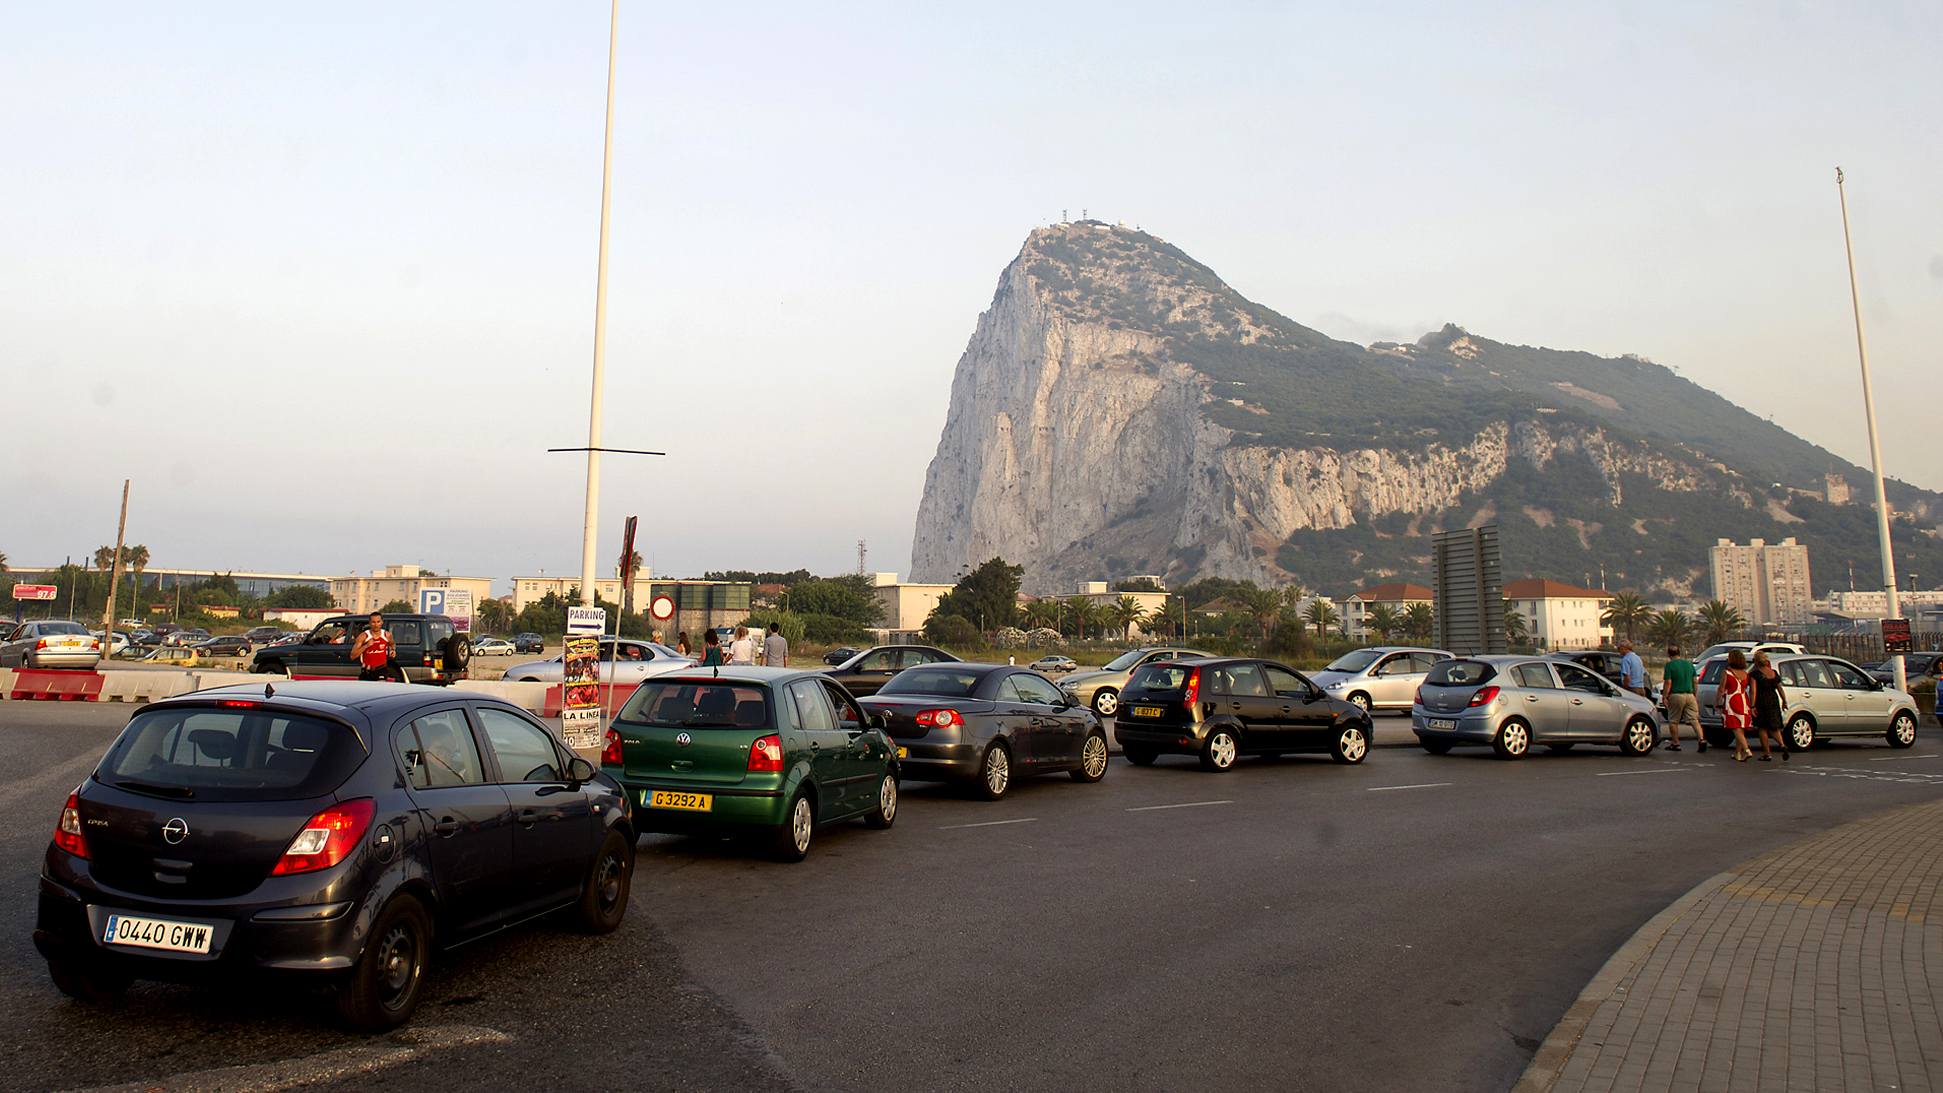 Carros espanhóis fazem fila diante da Rocha de Gibraltar para entrar no território britânico (AP Photo/Marcos Moreno)